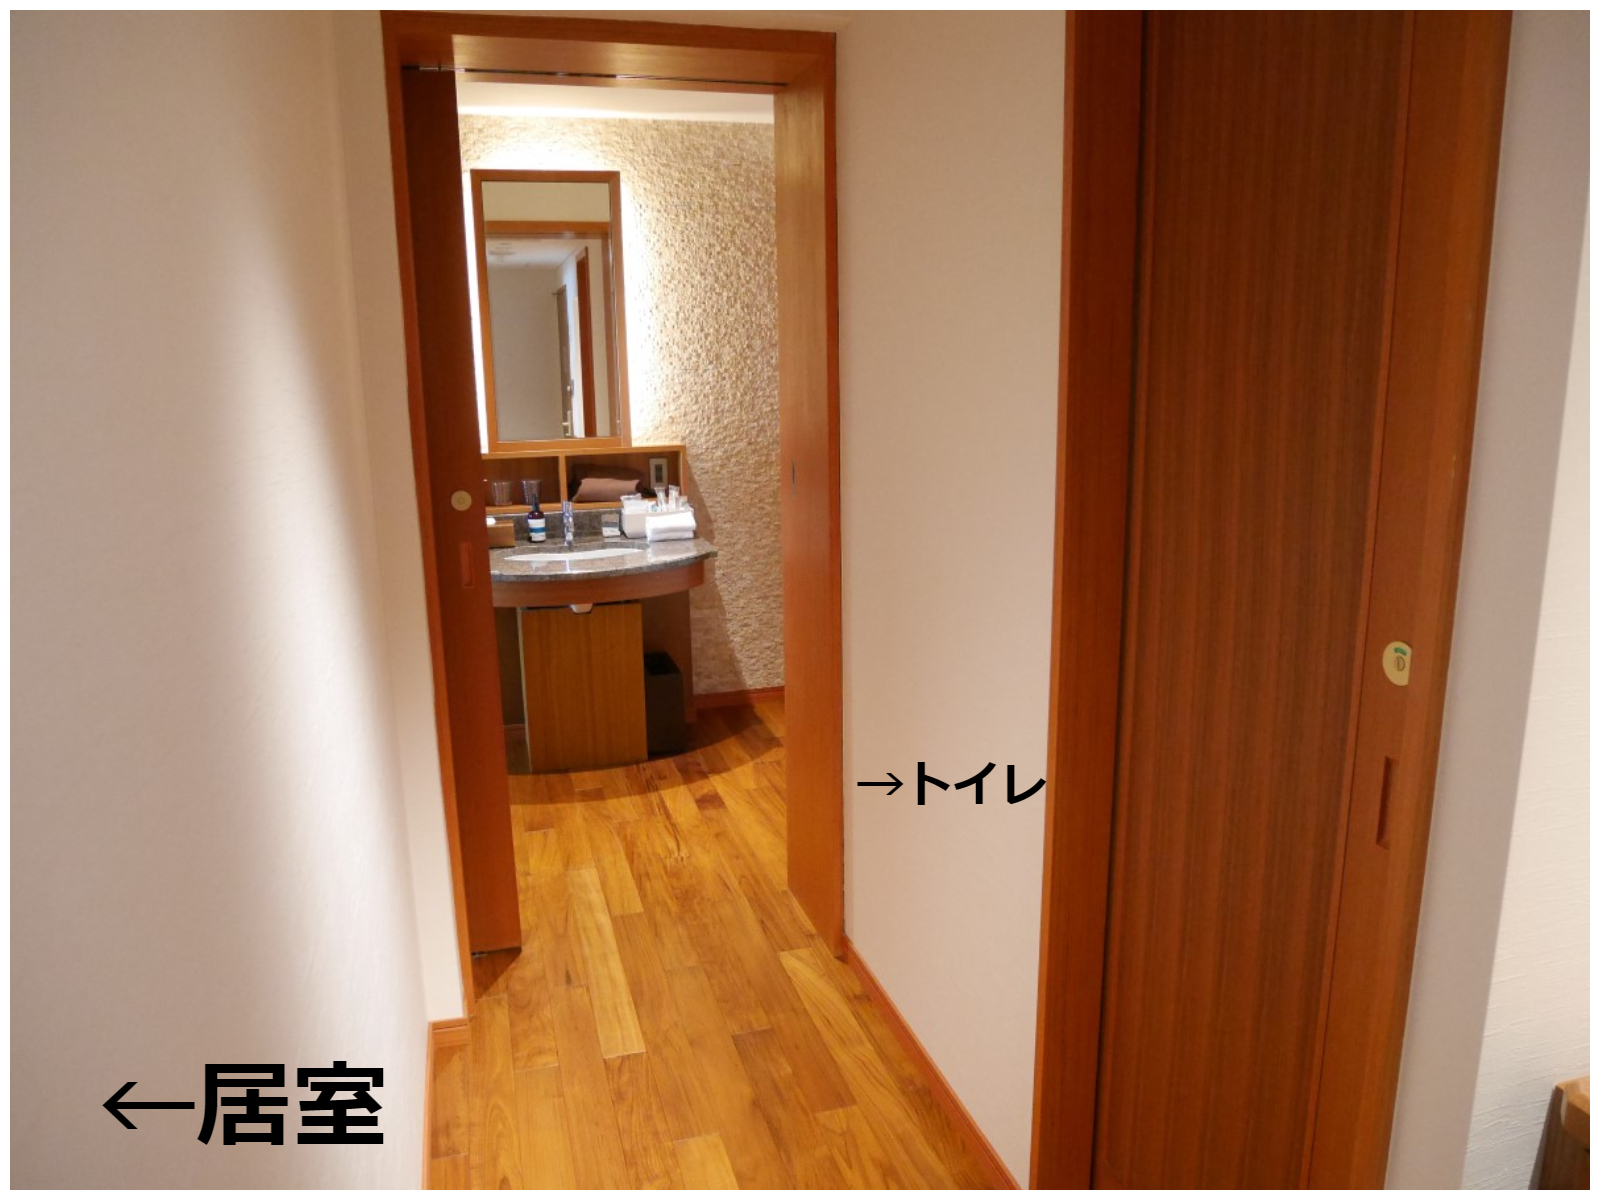 伊豆ホテル リゾート スパ 露天風呂付客室 続き うひひの日 温泉宿泊レポ